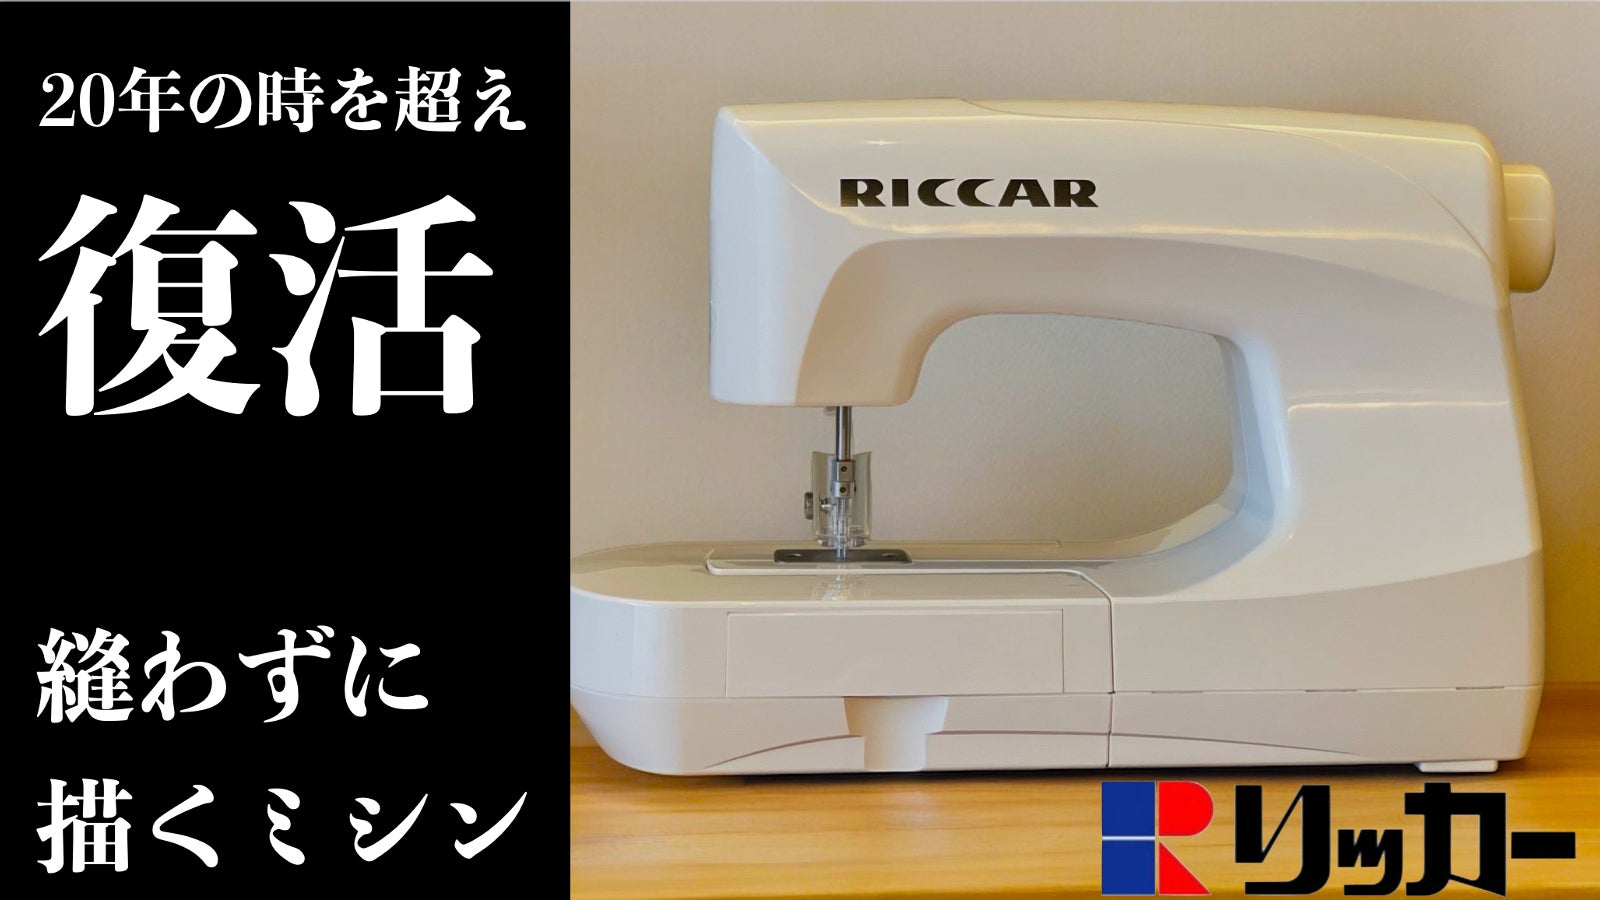 RICCAR(リッカー)ニードルパンチミシン「糸のいらない不思議なミシン 